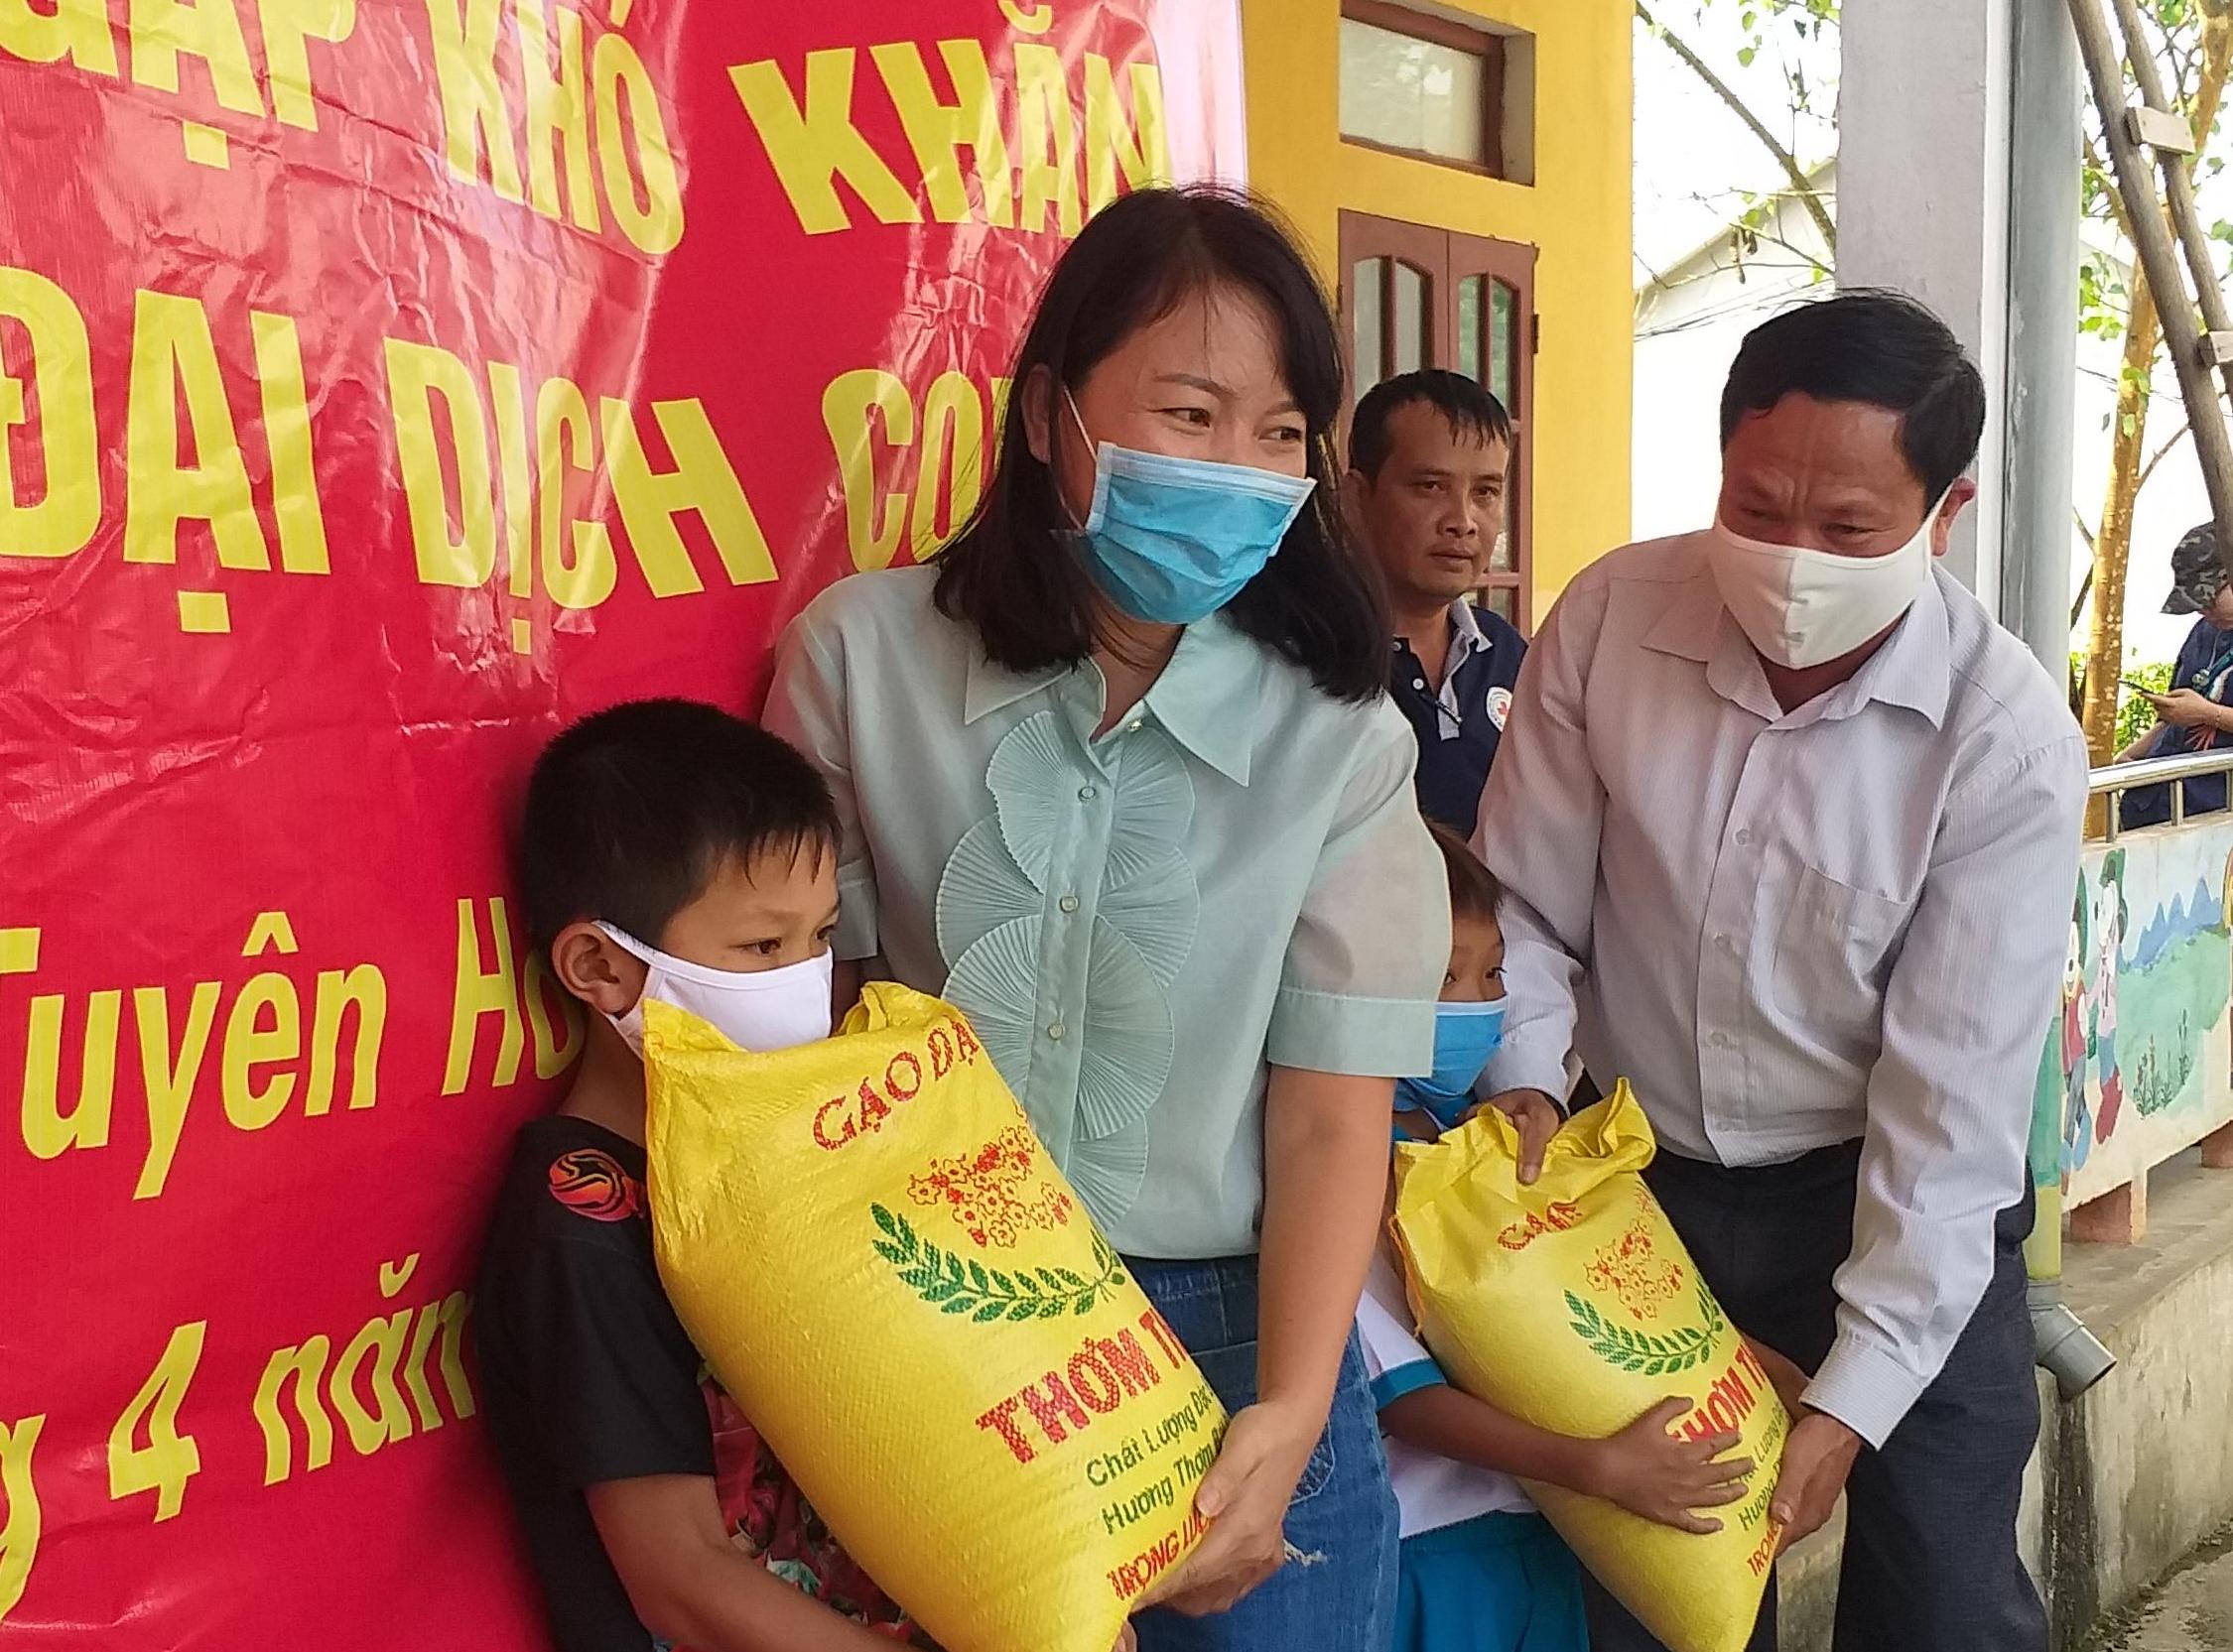  CLB Doanh nhân Nguyễn Hữu Cảnh-Quảng Bình tại TP. Hồ Chí Minh hỗ trợ học sinh khó khăn do ảnh hưởng của đại dịch Covid-19 tại Trường tiểu học Thanh Hóa (Tuyên Hóa).